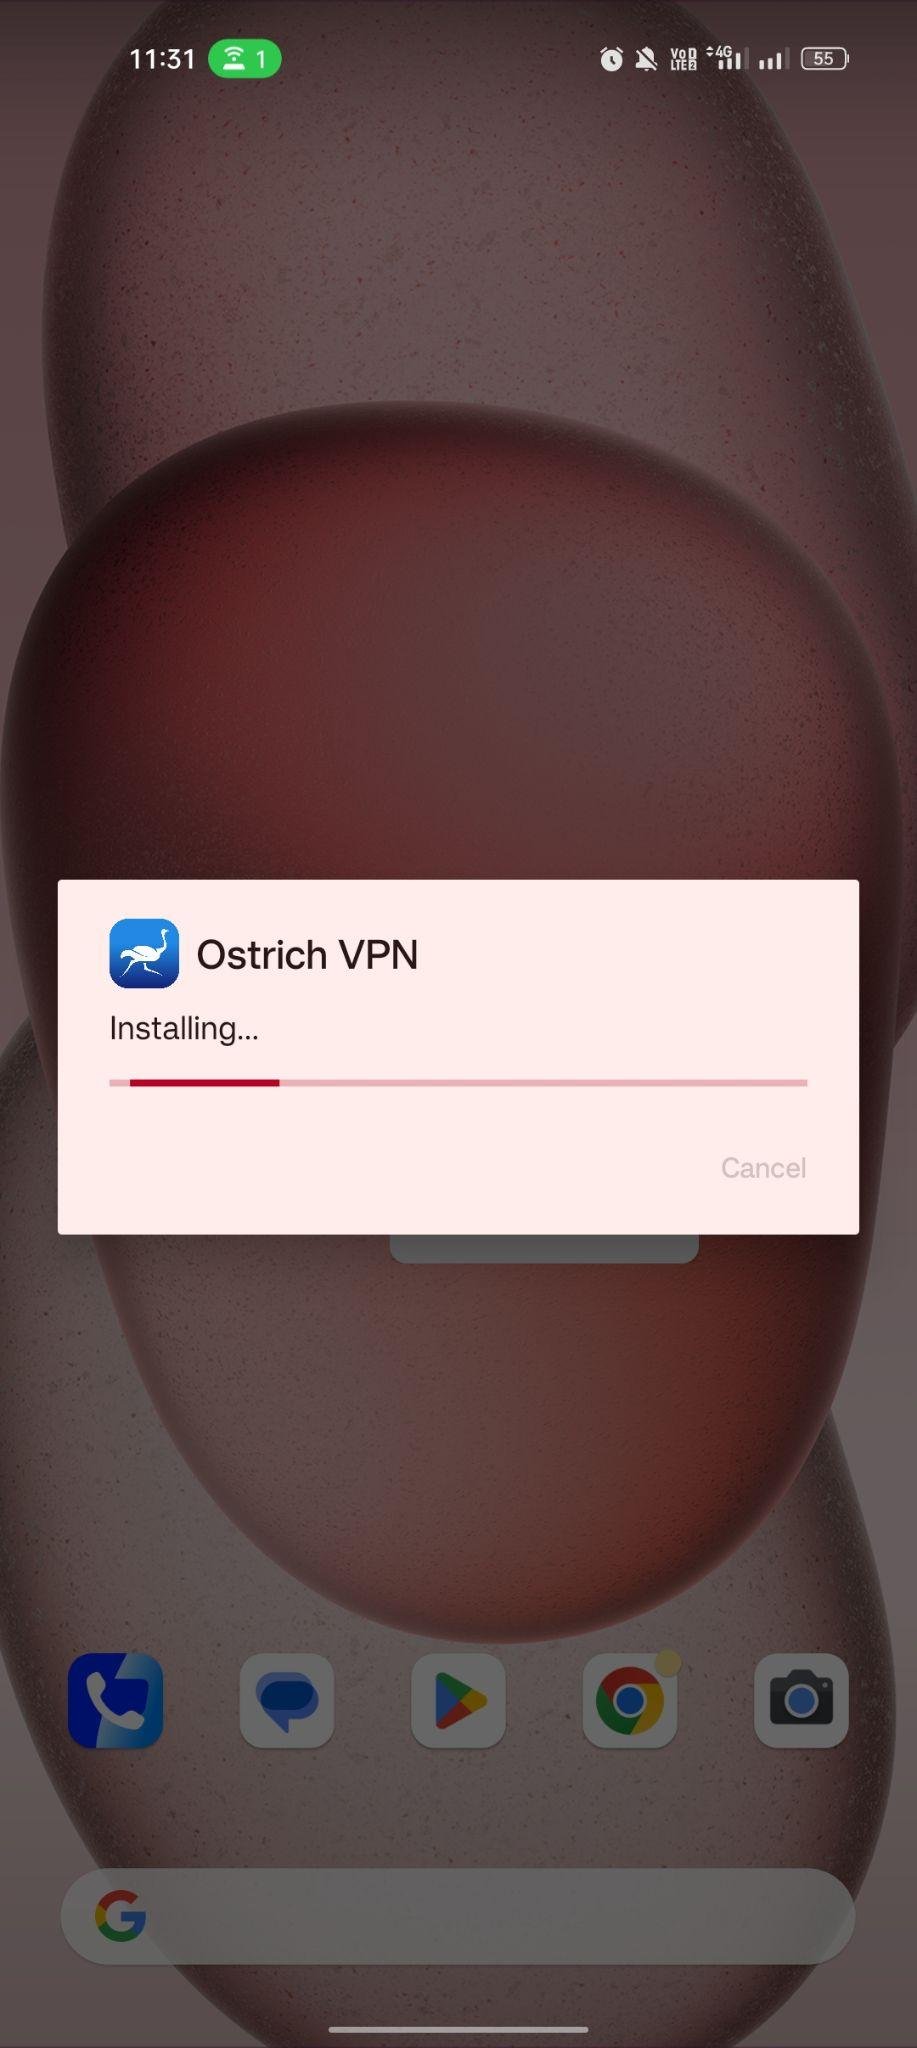 Ostrict VPN apk installing